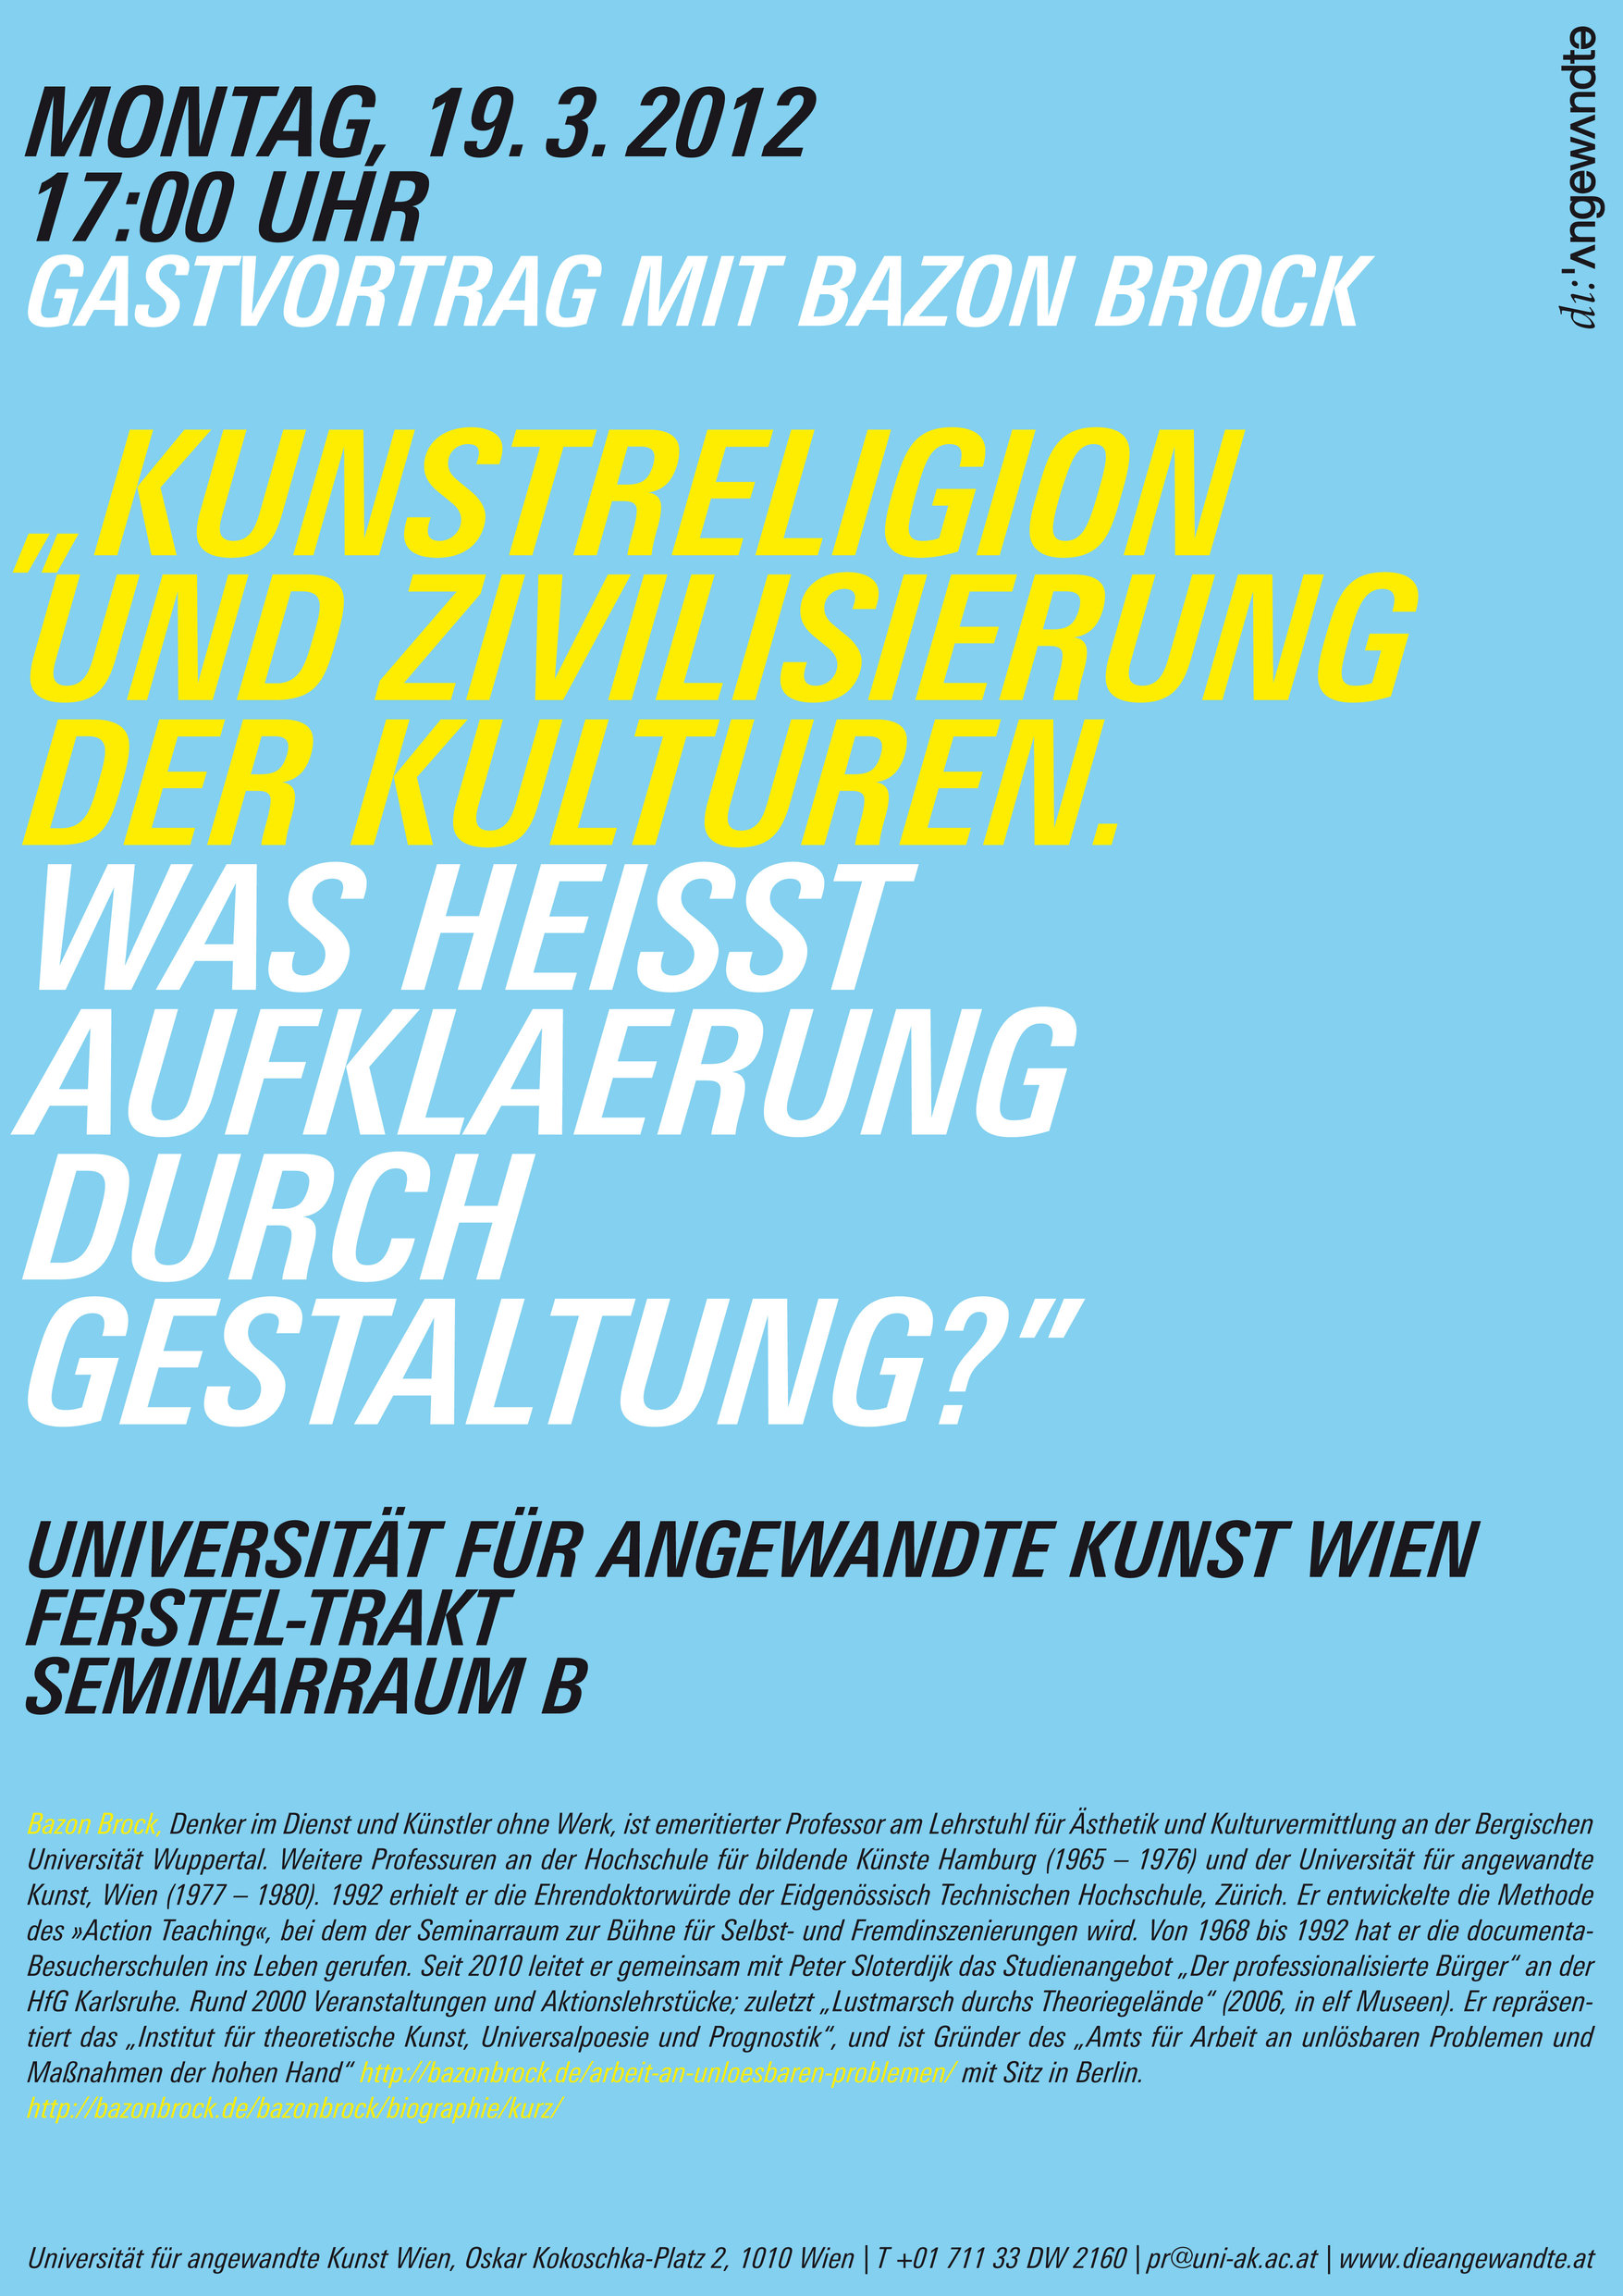 Vortrag "Kunstreligion und Zivilisierung der Kulturen. Was heißt Aufklärung durch Gestaltung?", Bild: Universität für angewandte Kunst Wien, 19.03.2012..